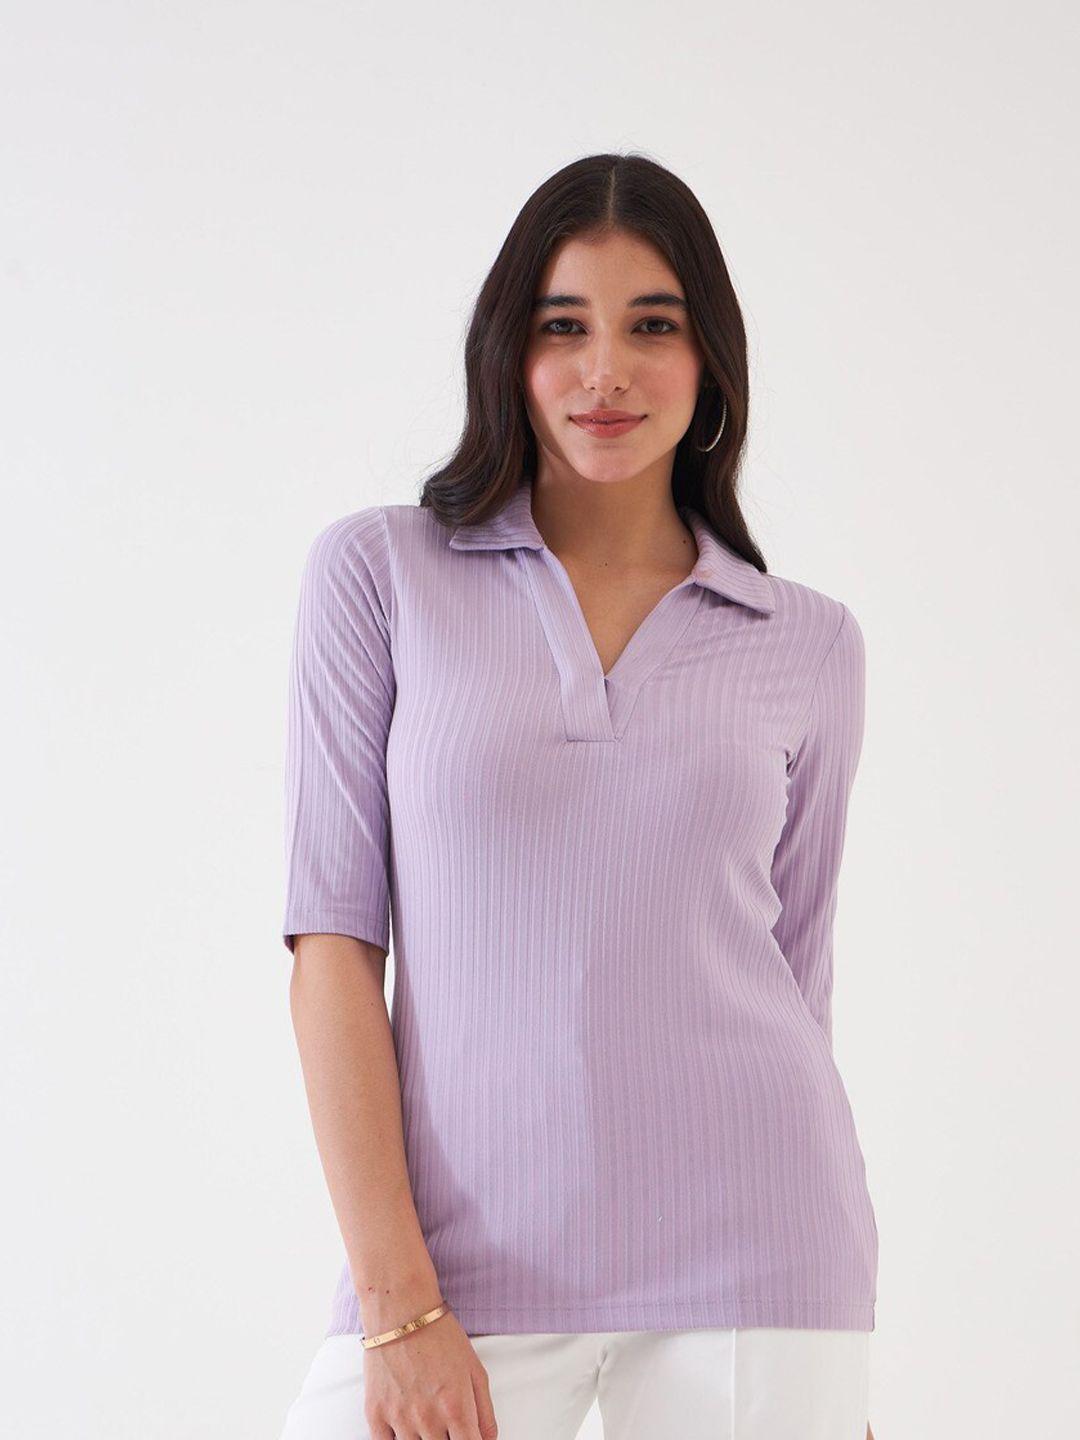 salt attire vertical stripes shirt collar regular top